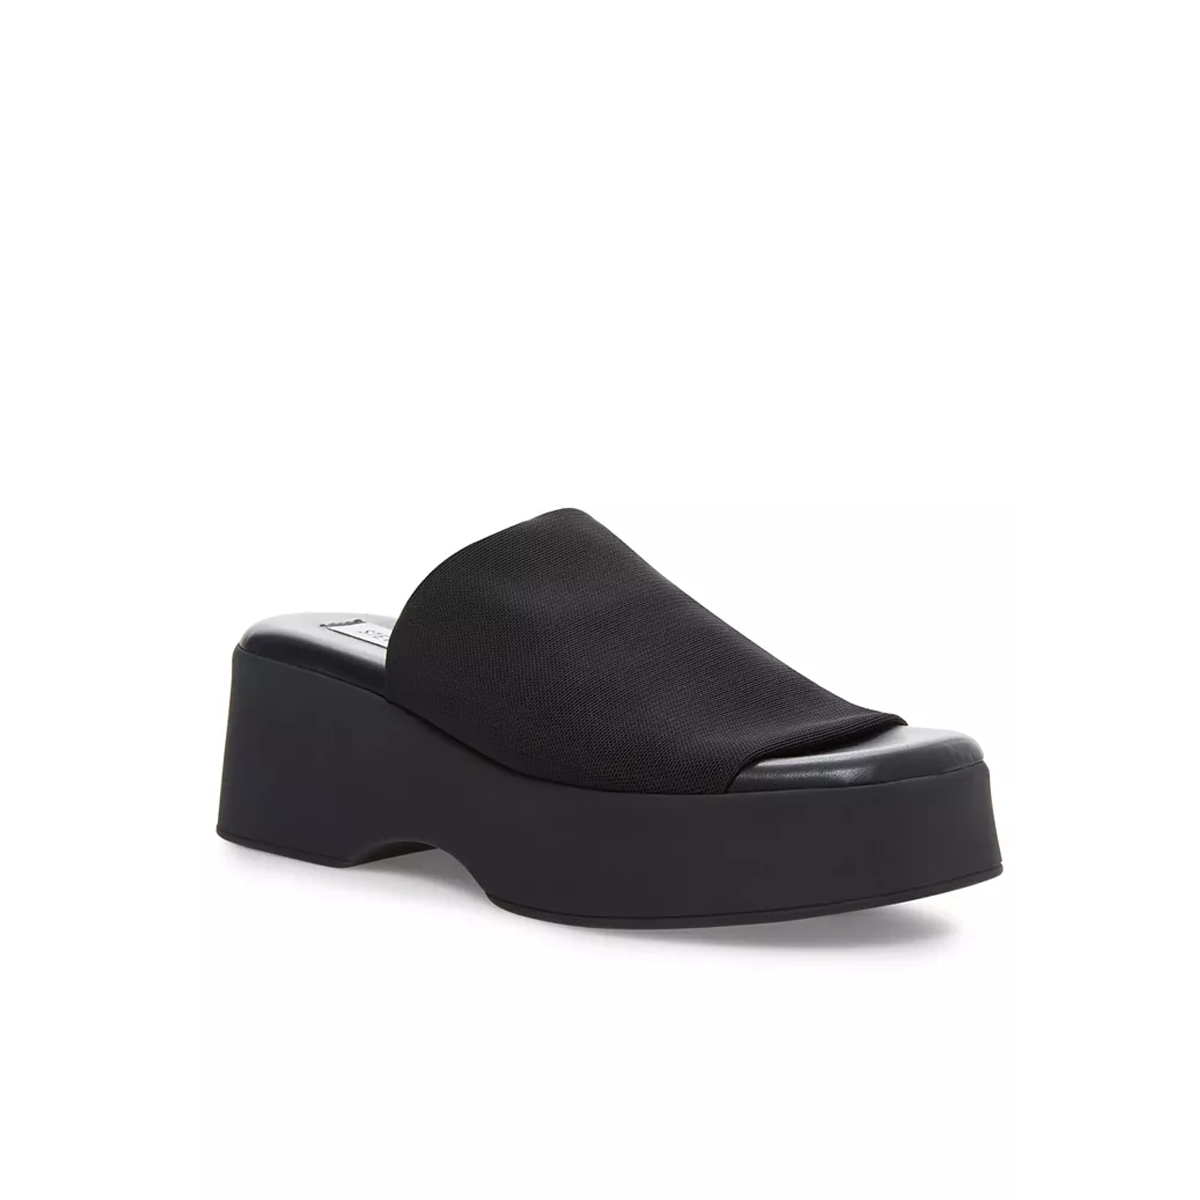 Steve Madden Women's Slinky30 Flatform Wedge Sandals - Black